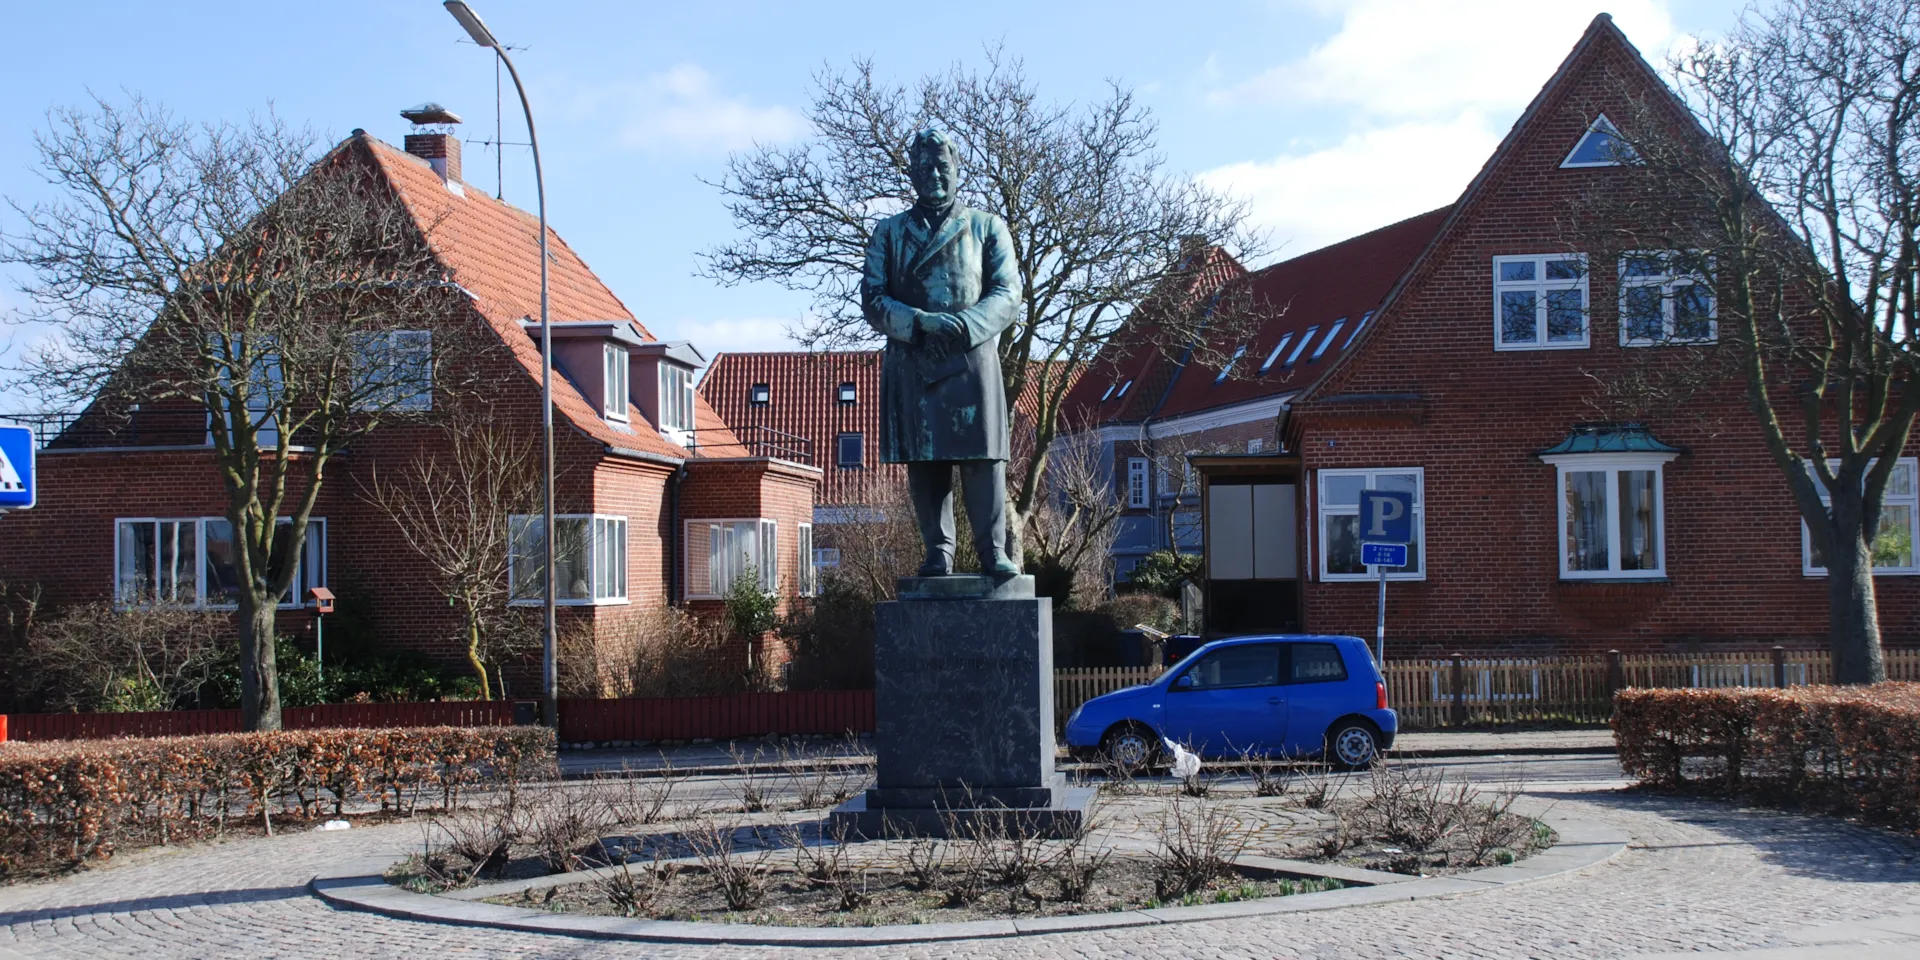 J.C. Christensens statue